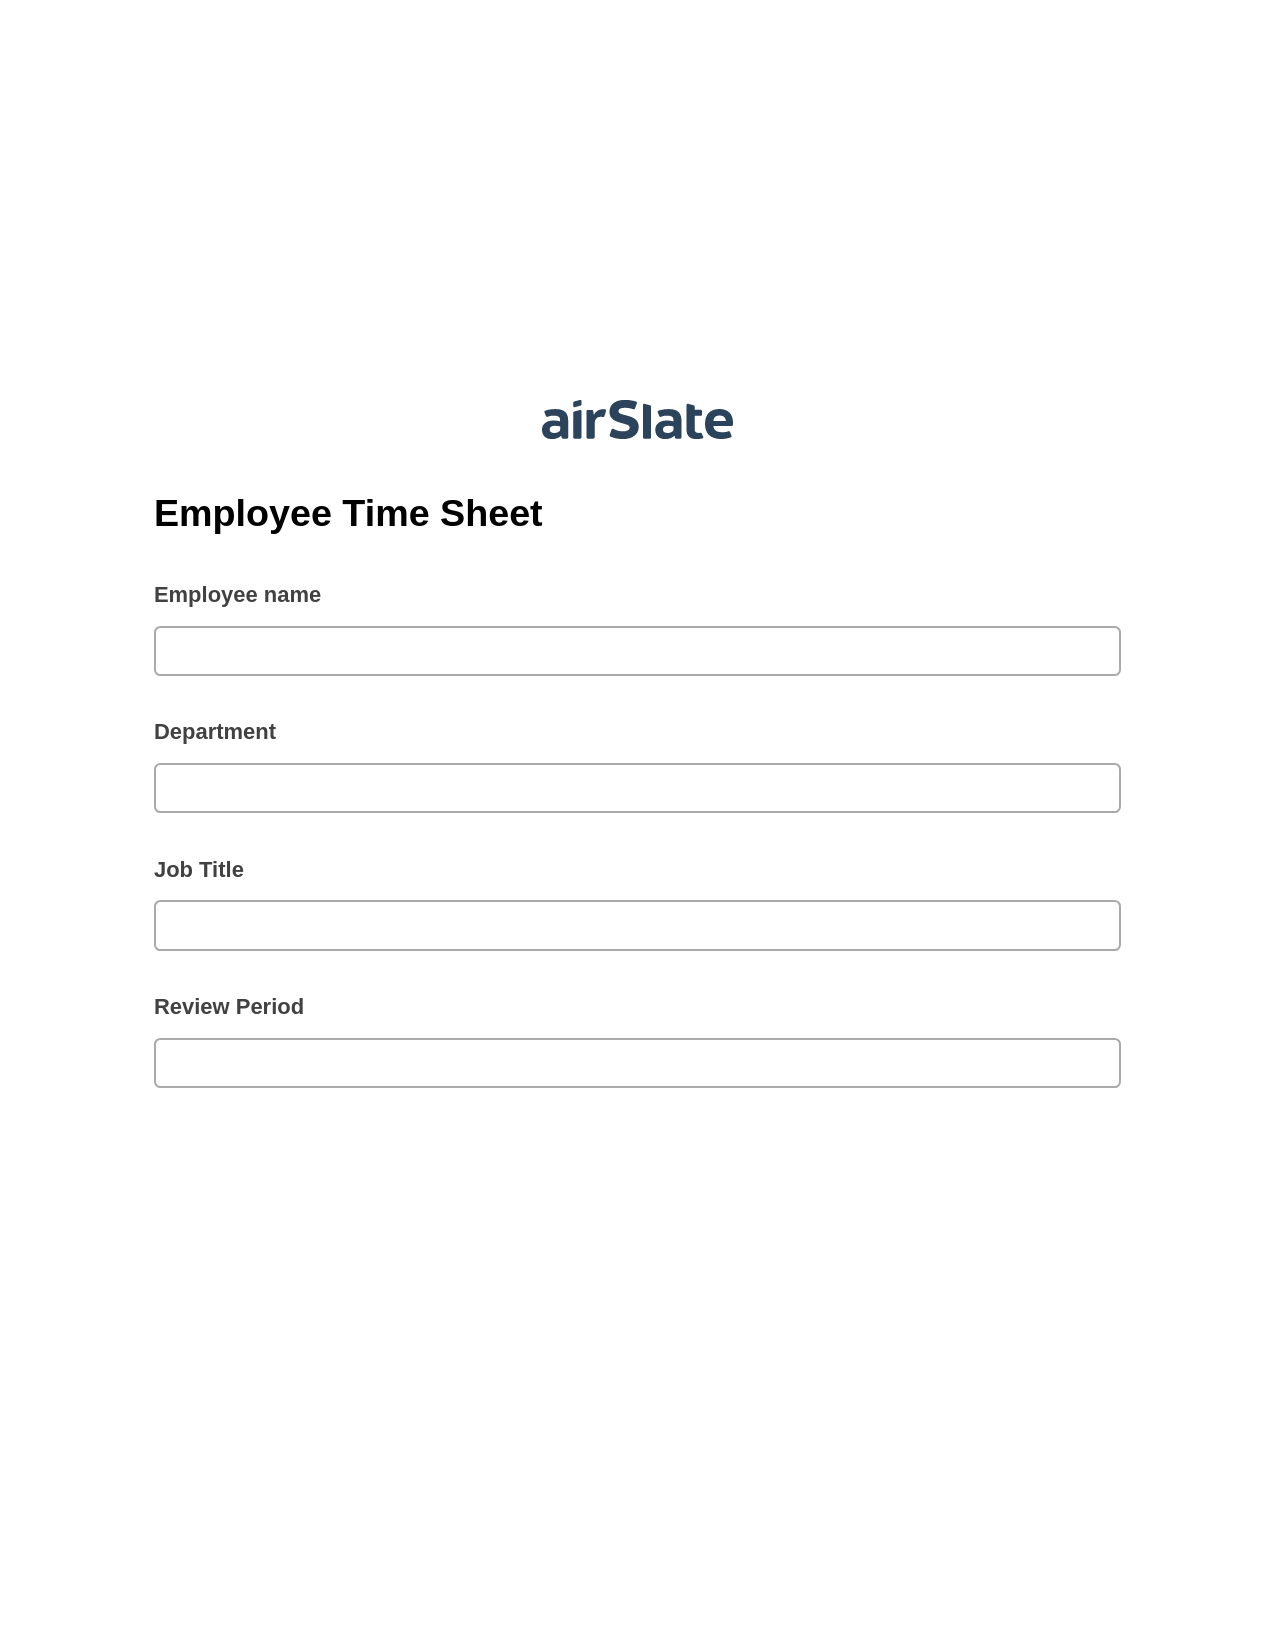 Employee Time Sheet System Bot - Slack Two-Way Binding Bot, Create Salesforce Records Bot, Export to Smartsheet